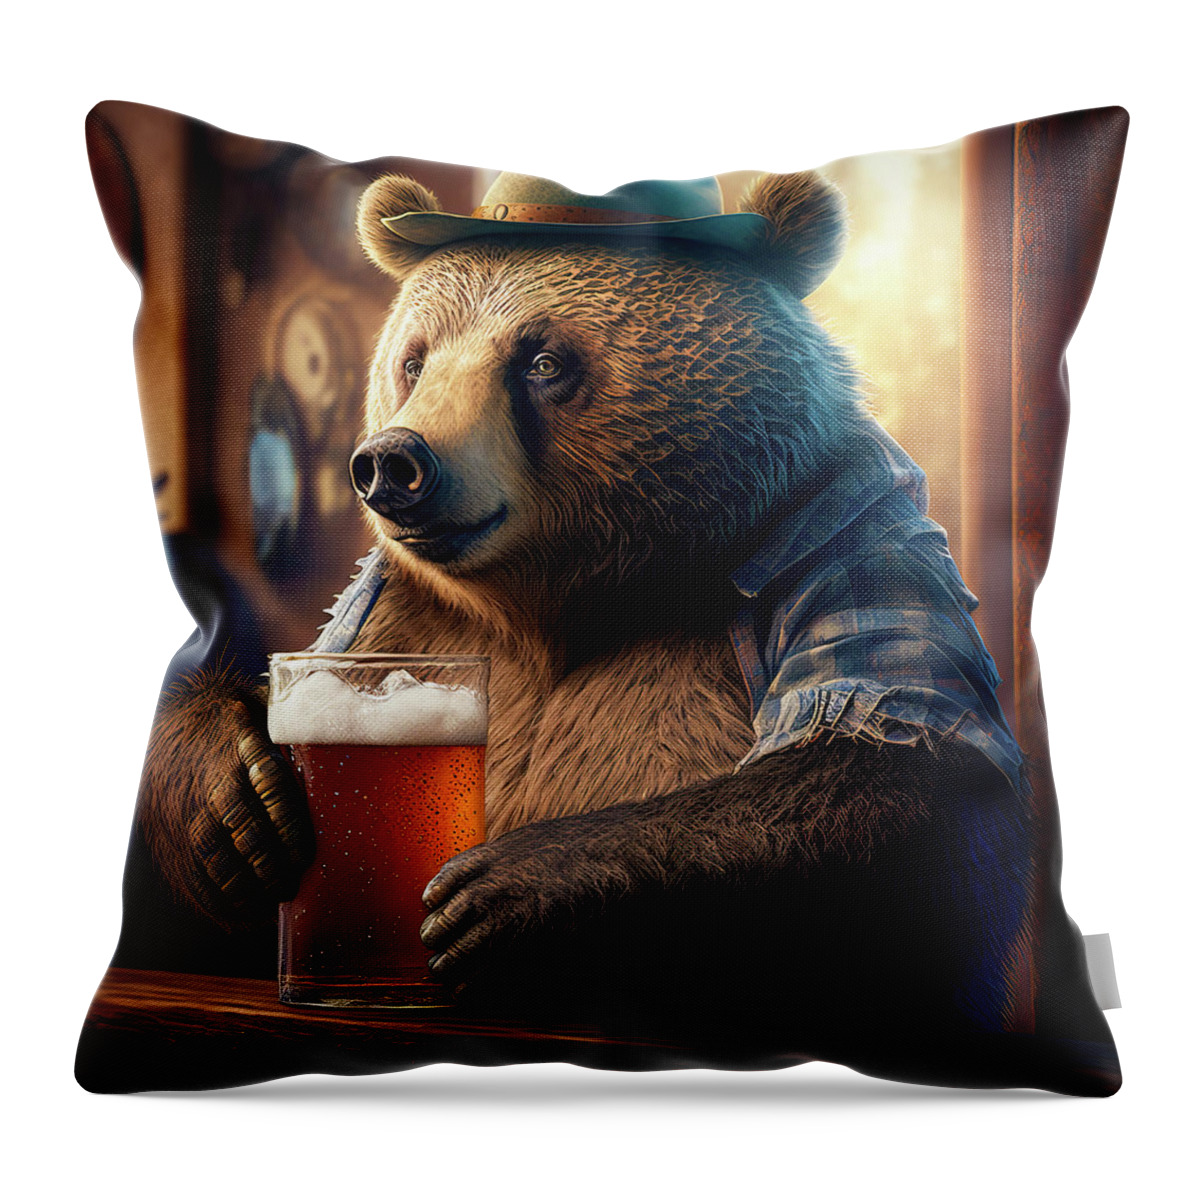 Bear Throw Pillow featuring the digital art Bear Beer Buddy 02 by Matthias Hauser